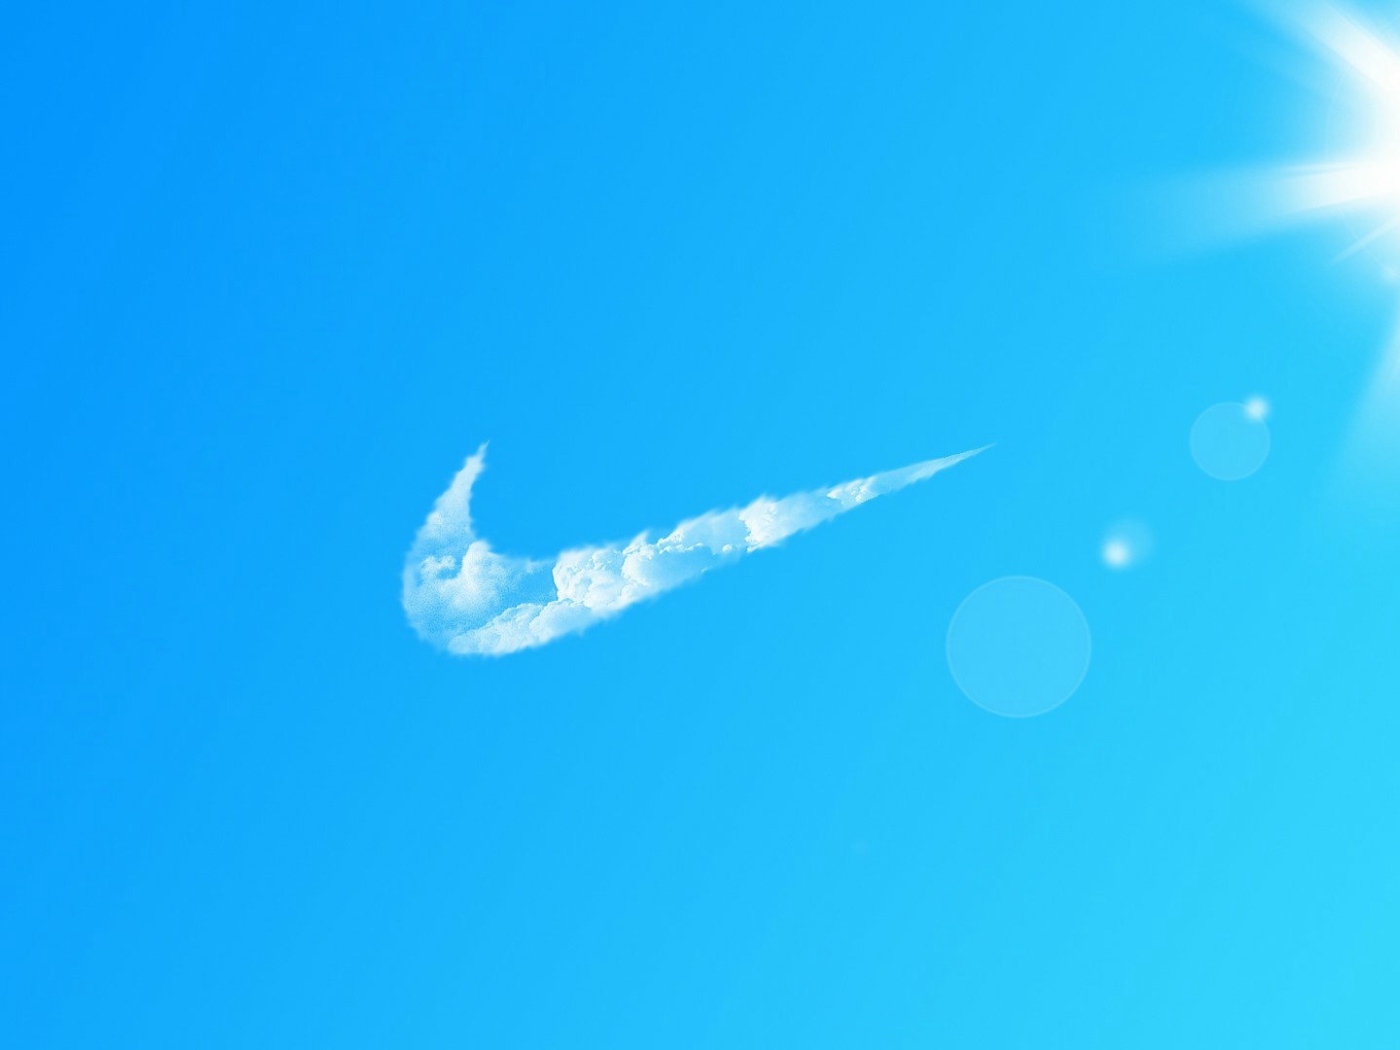 Nike in the sky